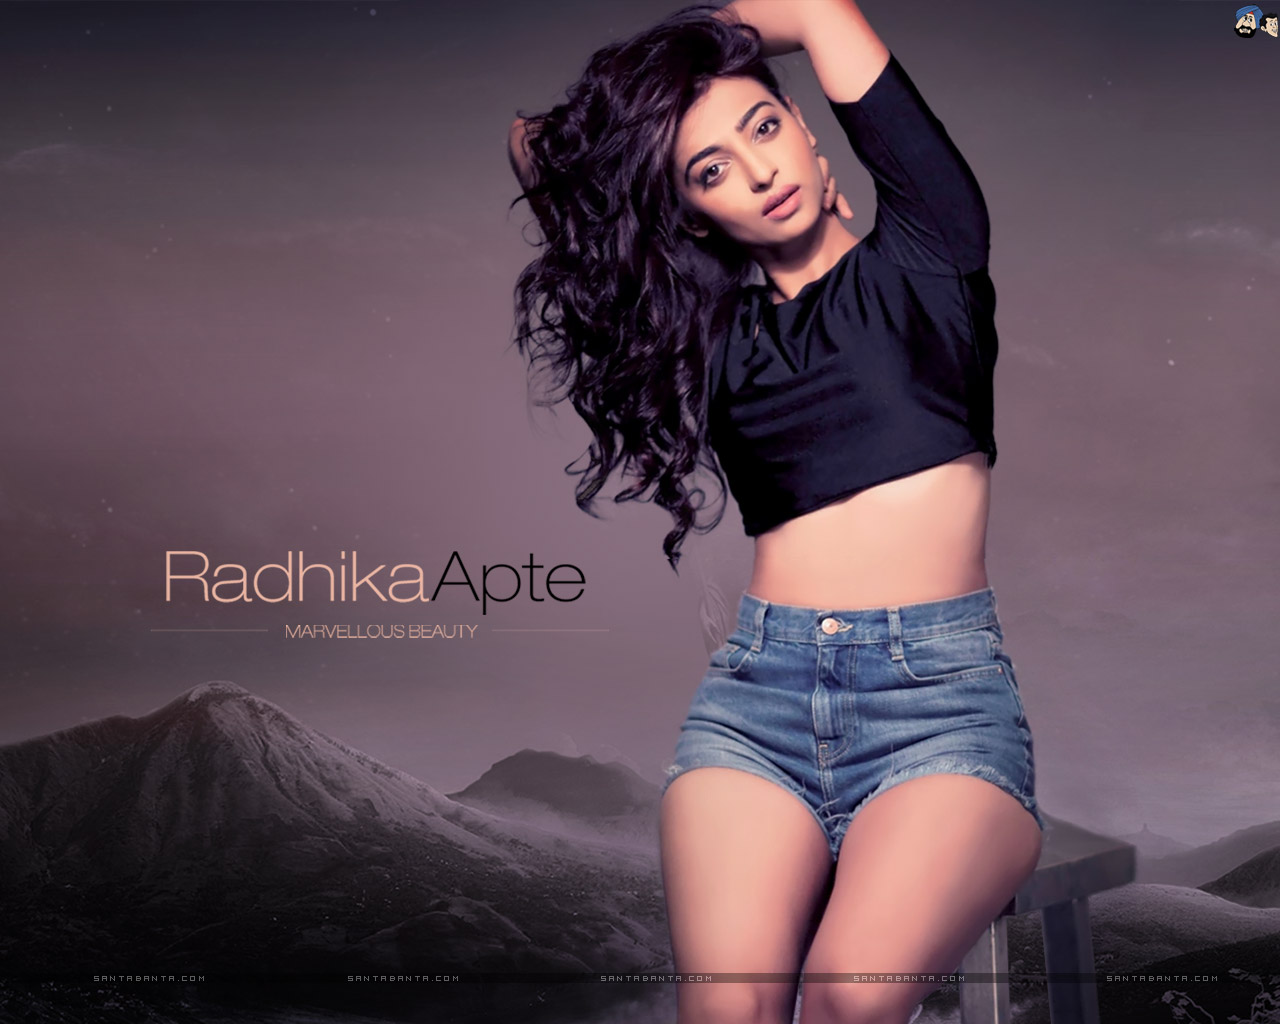 Indian Hot Actress Actress Radhika Apte Hot Sexy Photos Ha